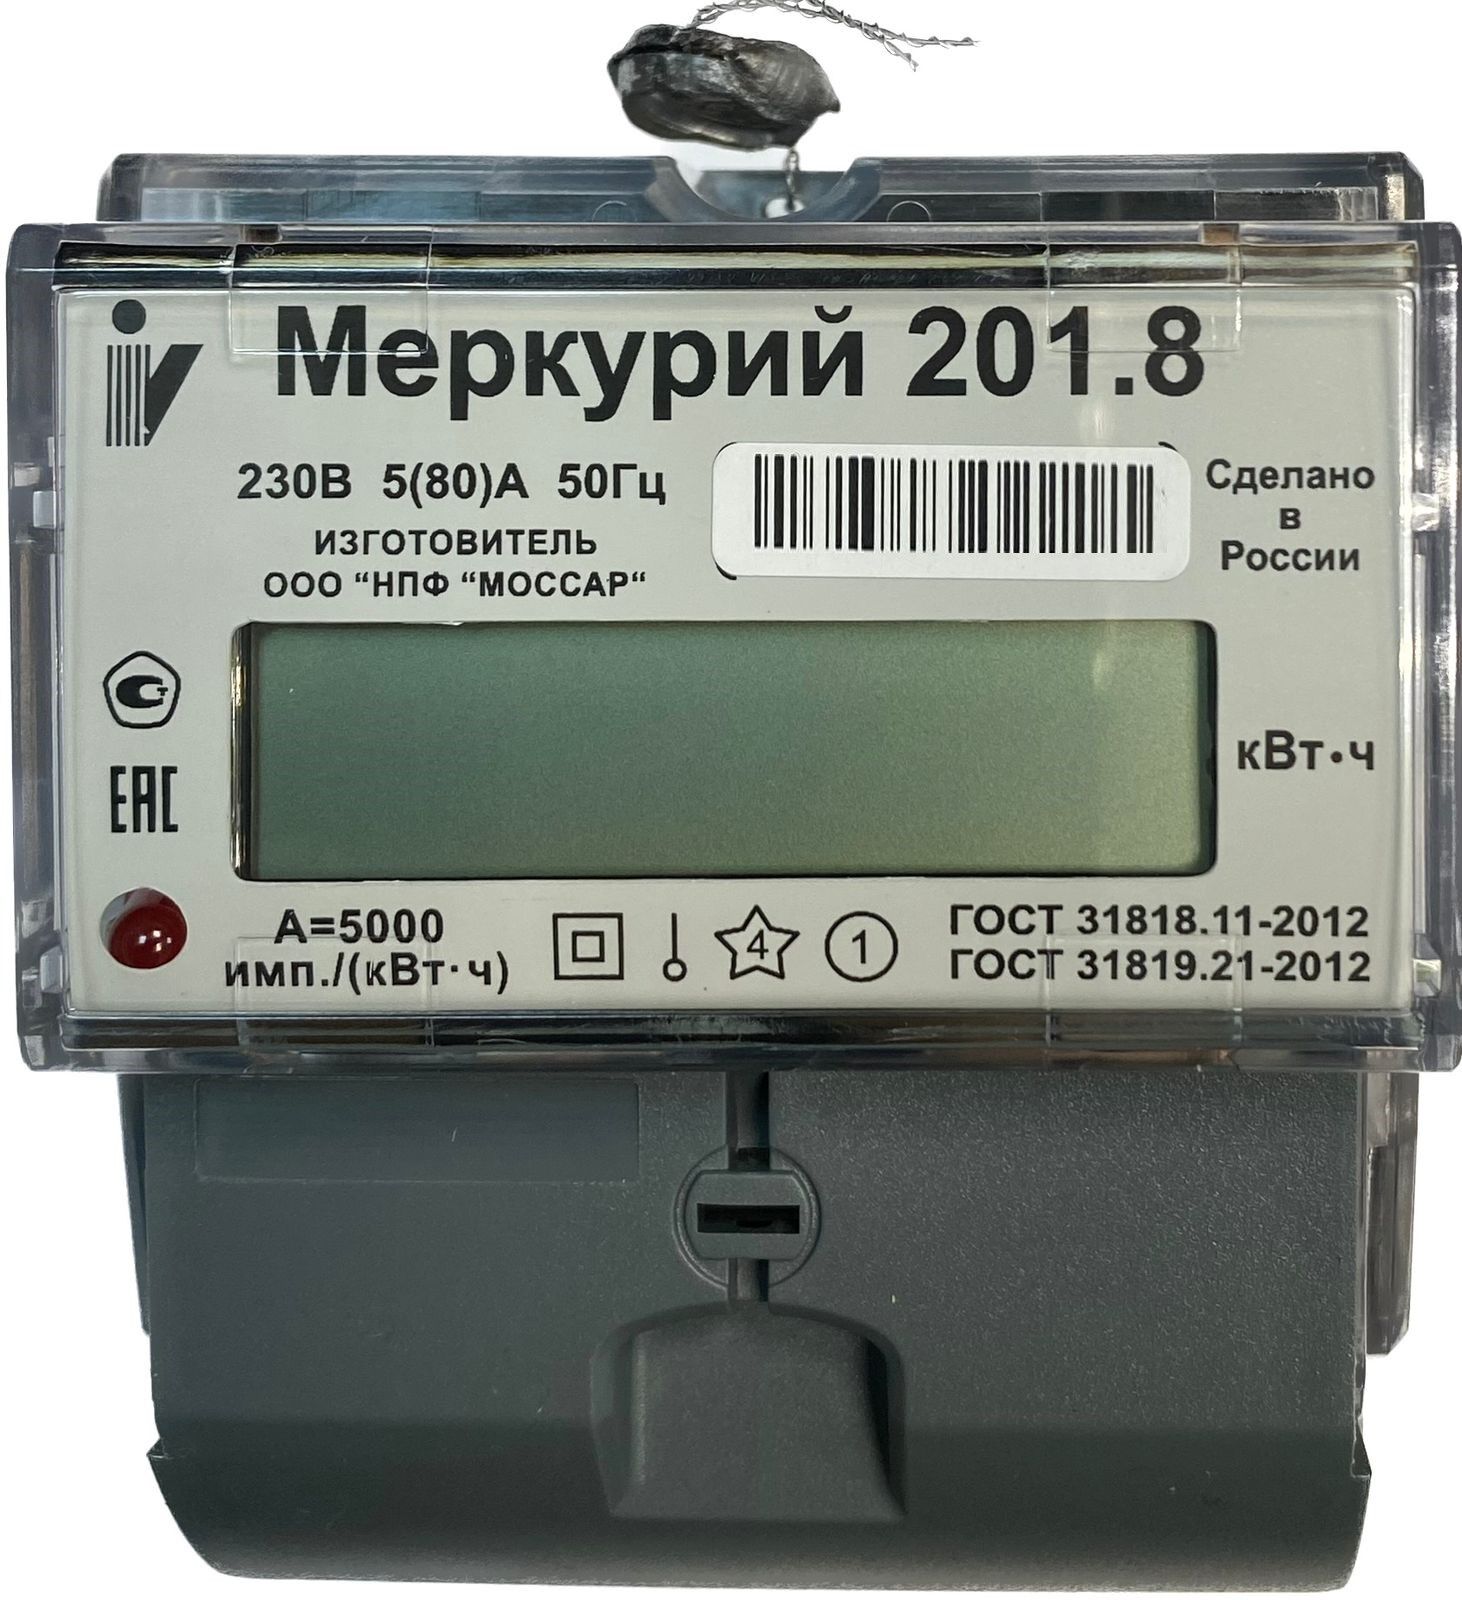 Счетчик электроэнергии Меркурий 201.8 5/80А Т1 D 230В ЖК